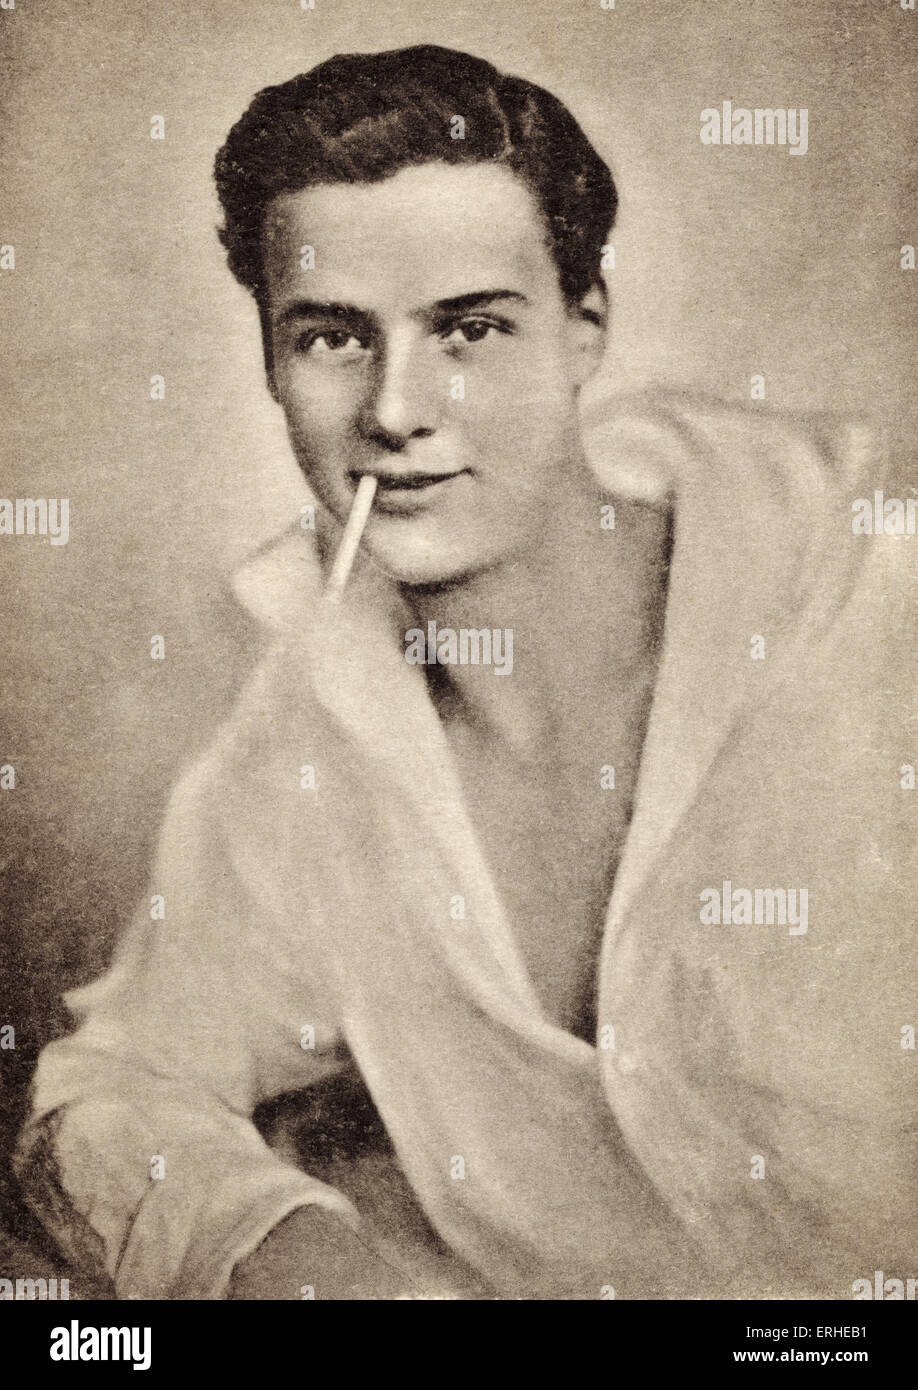 Walter Slezak - österreichischer Schauspieler und Sohn von der Wagnerschen Opernsänger Leo Slezak.  1902-1983. Werbung noch. Stockfoto